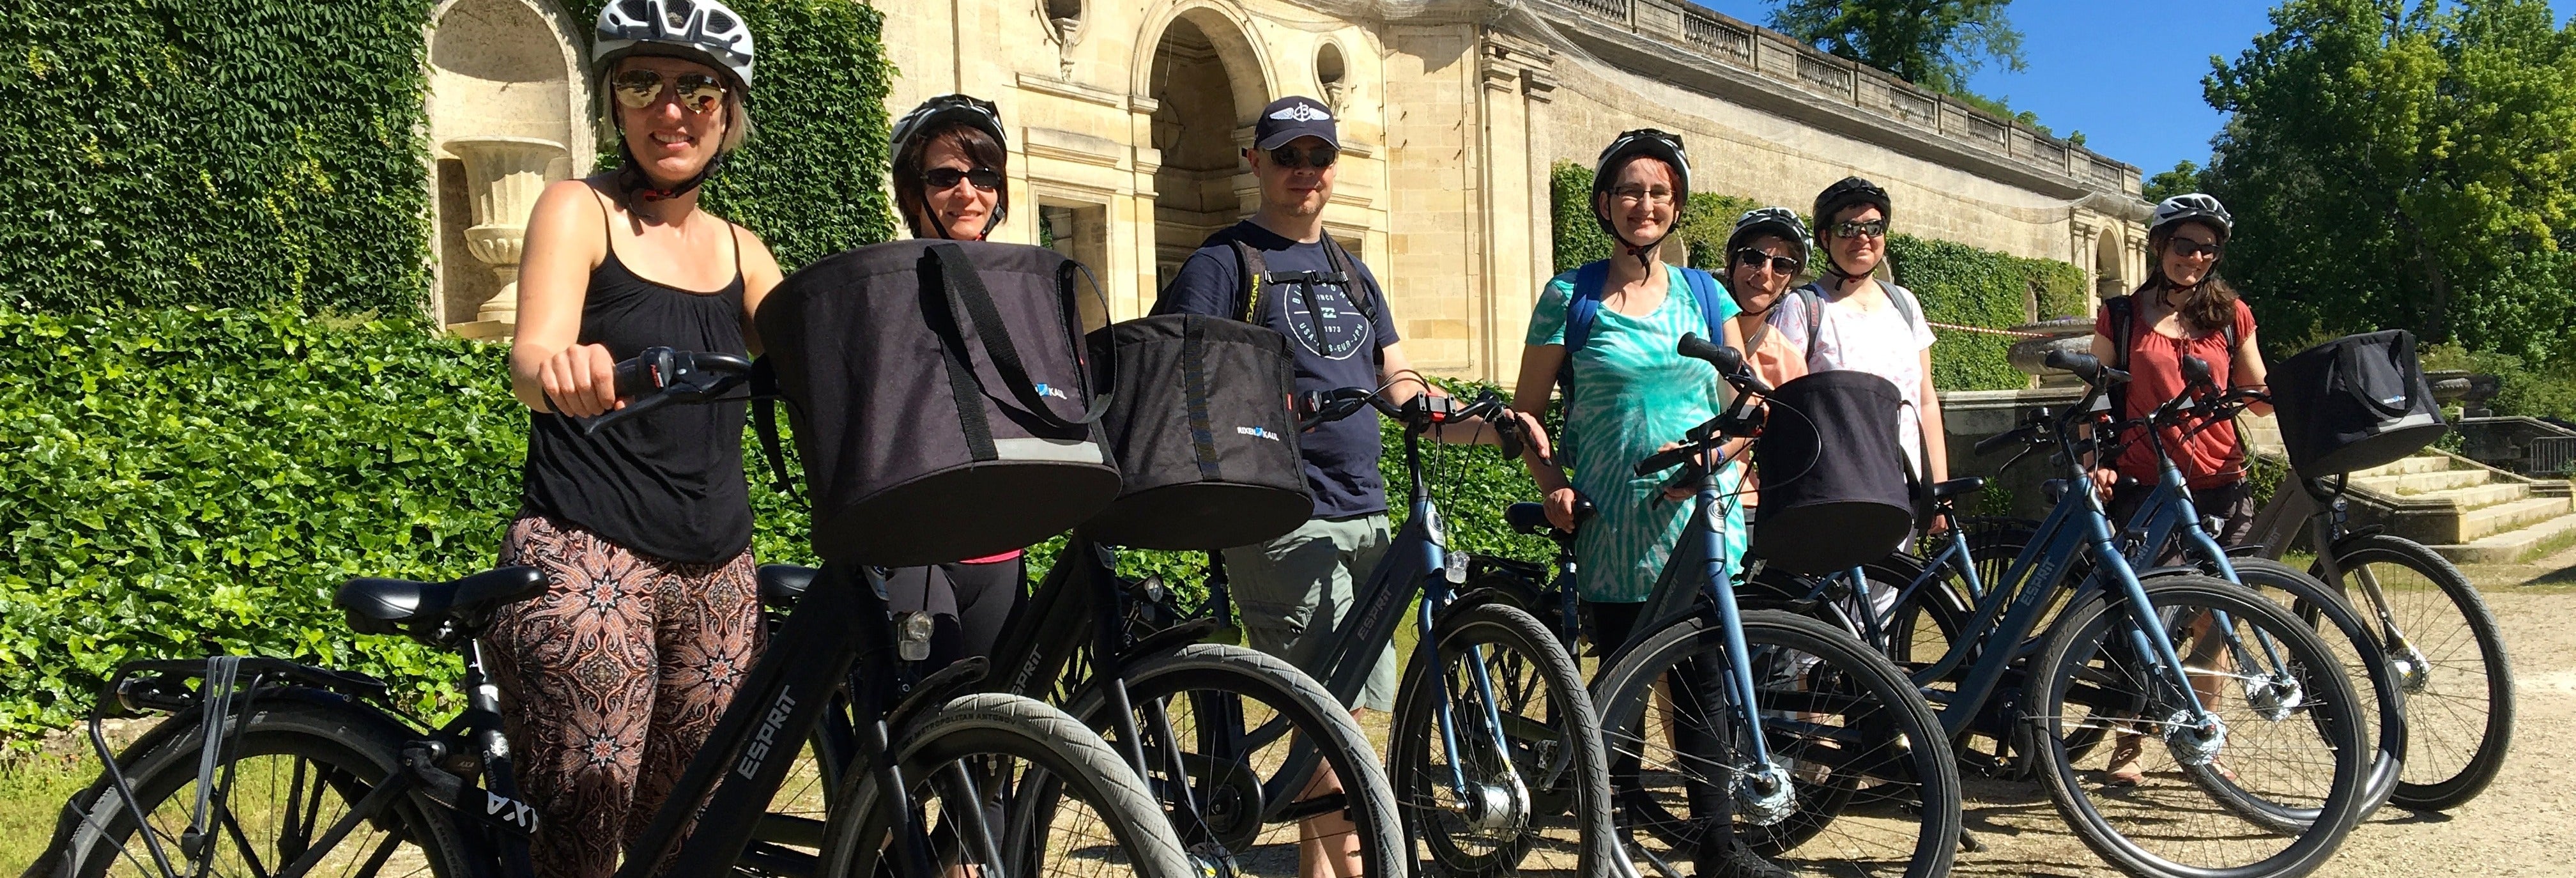 Tour de bicicleta por Bordeaux